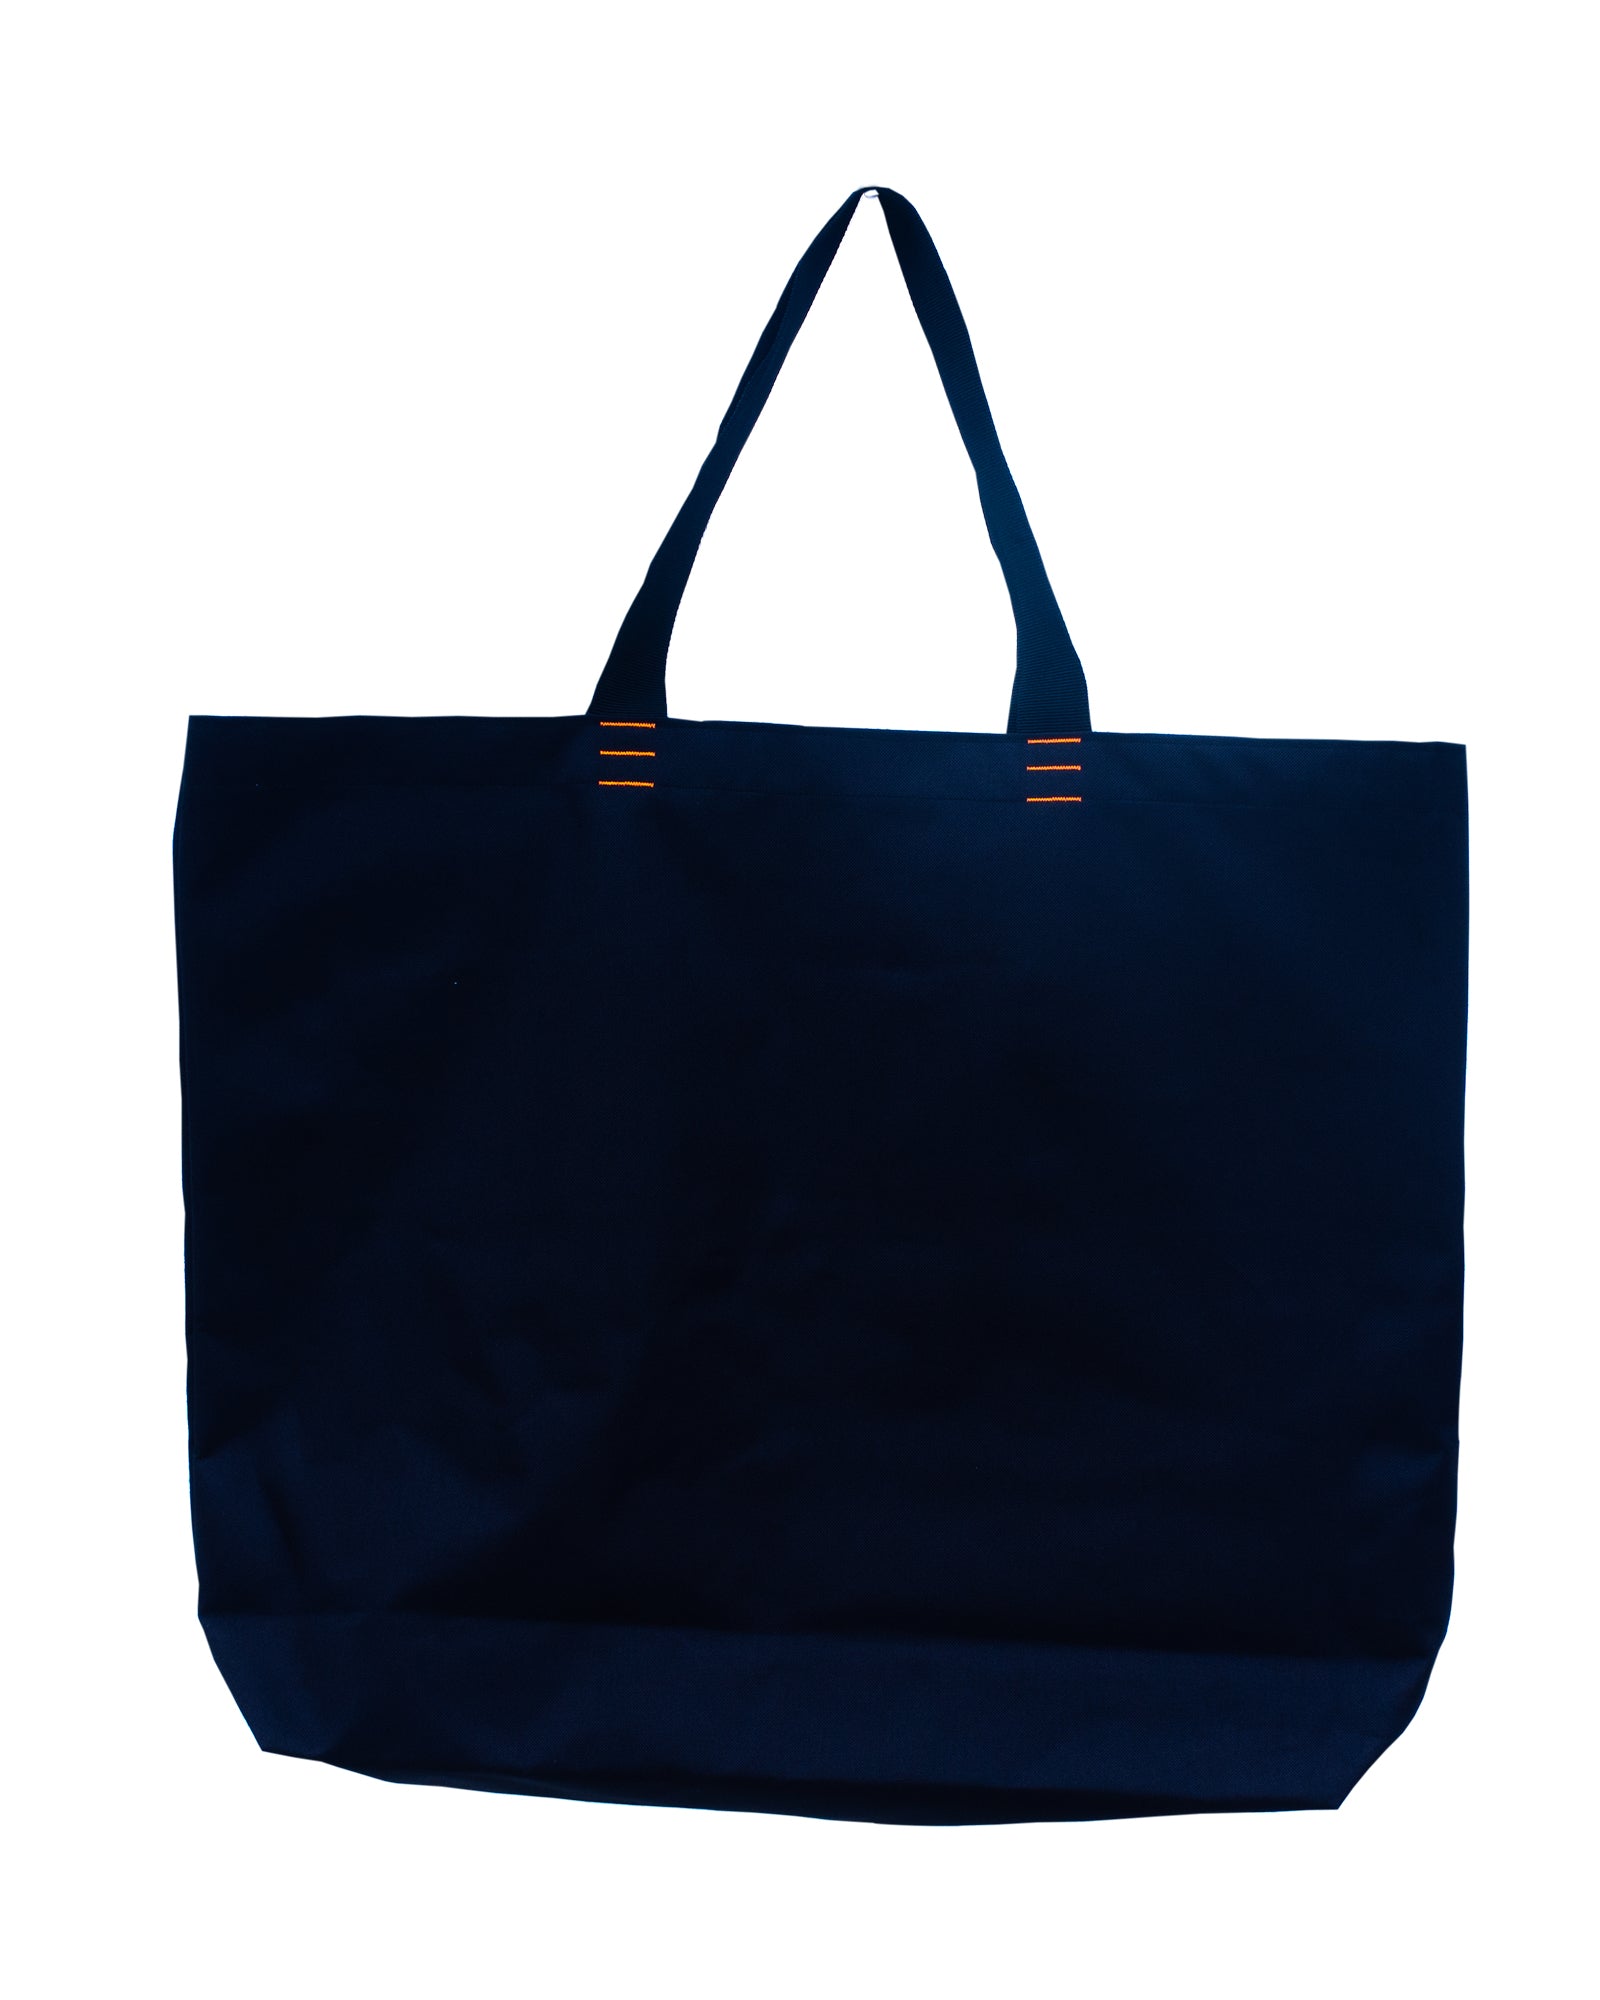 BIGBLACK BAG, design No 1